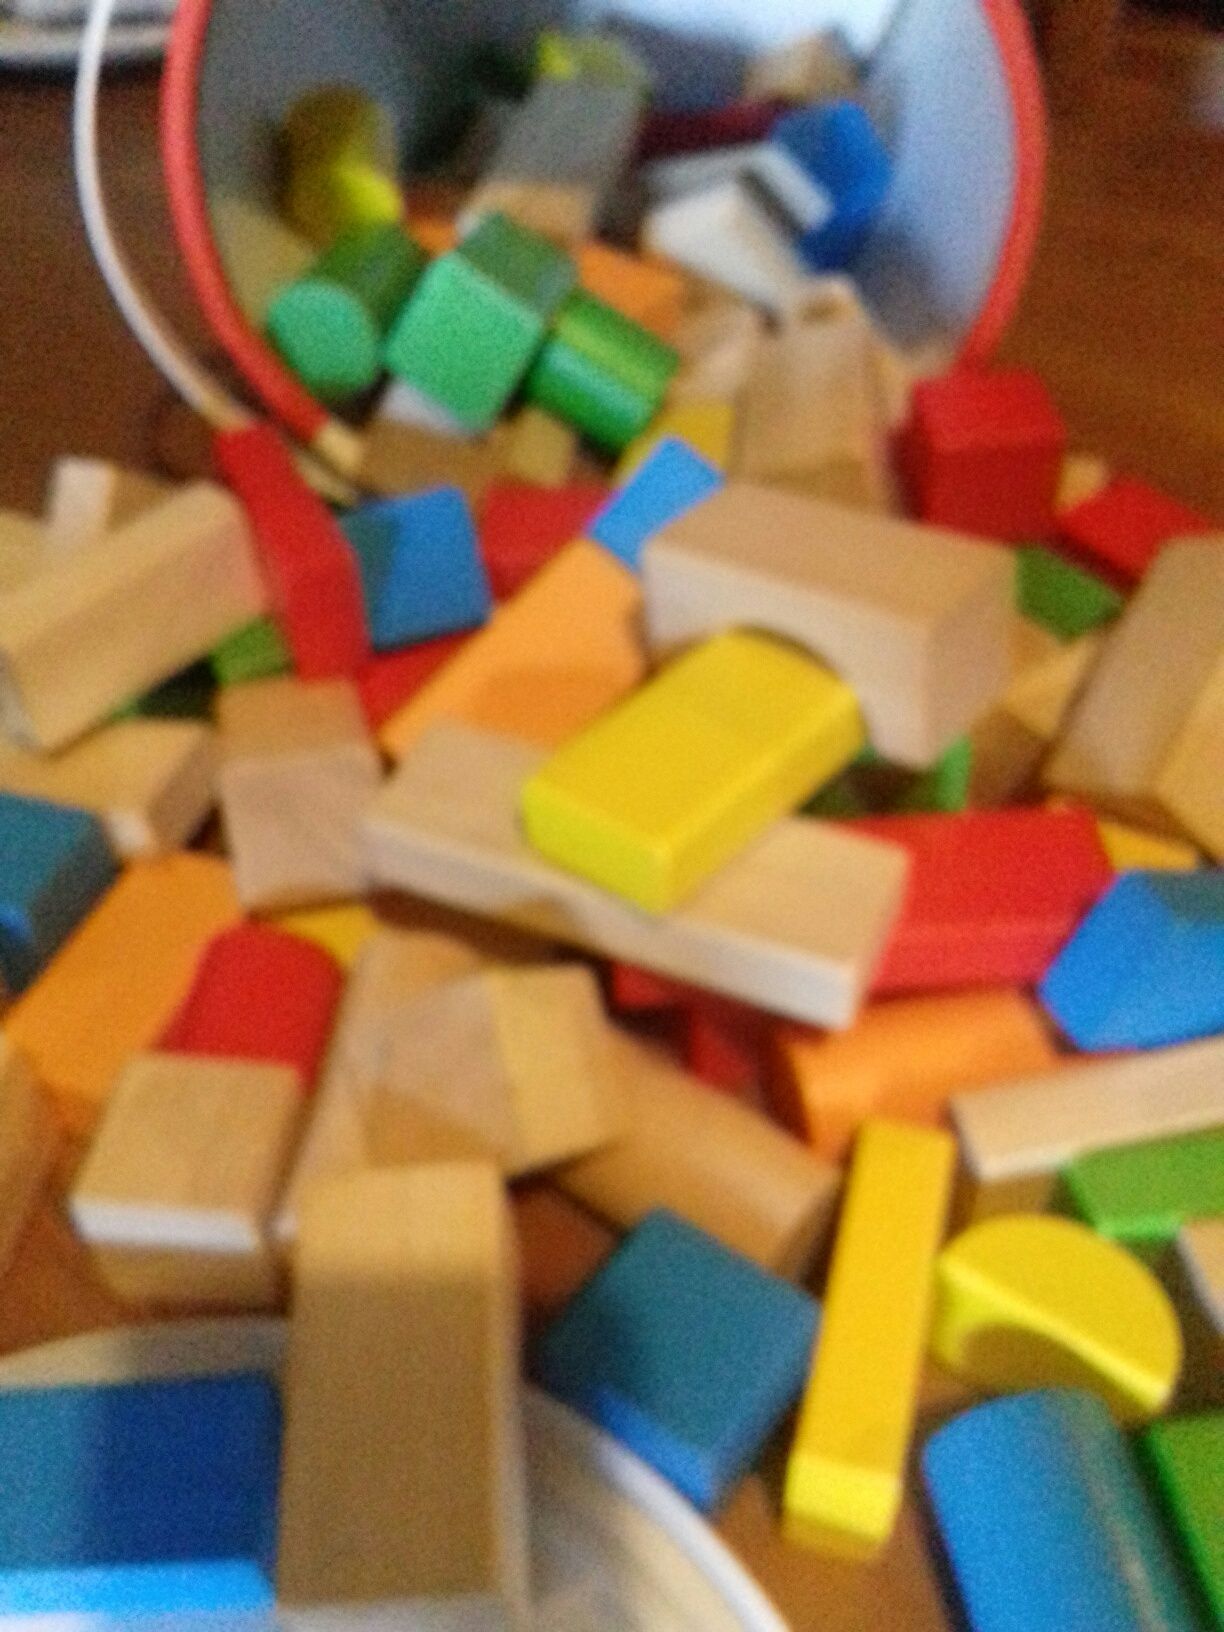 Caixa de blocos de madeira e outros jogos de aprendizagem.